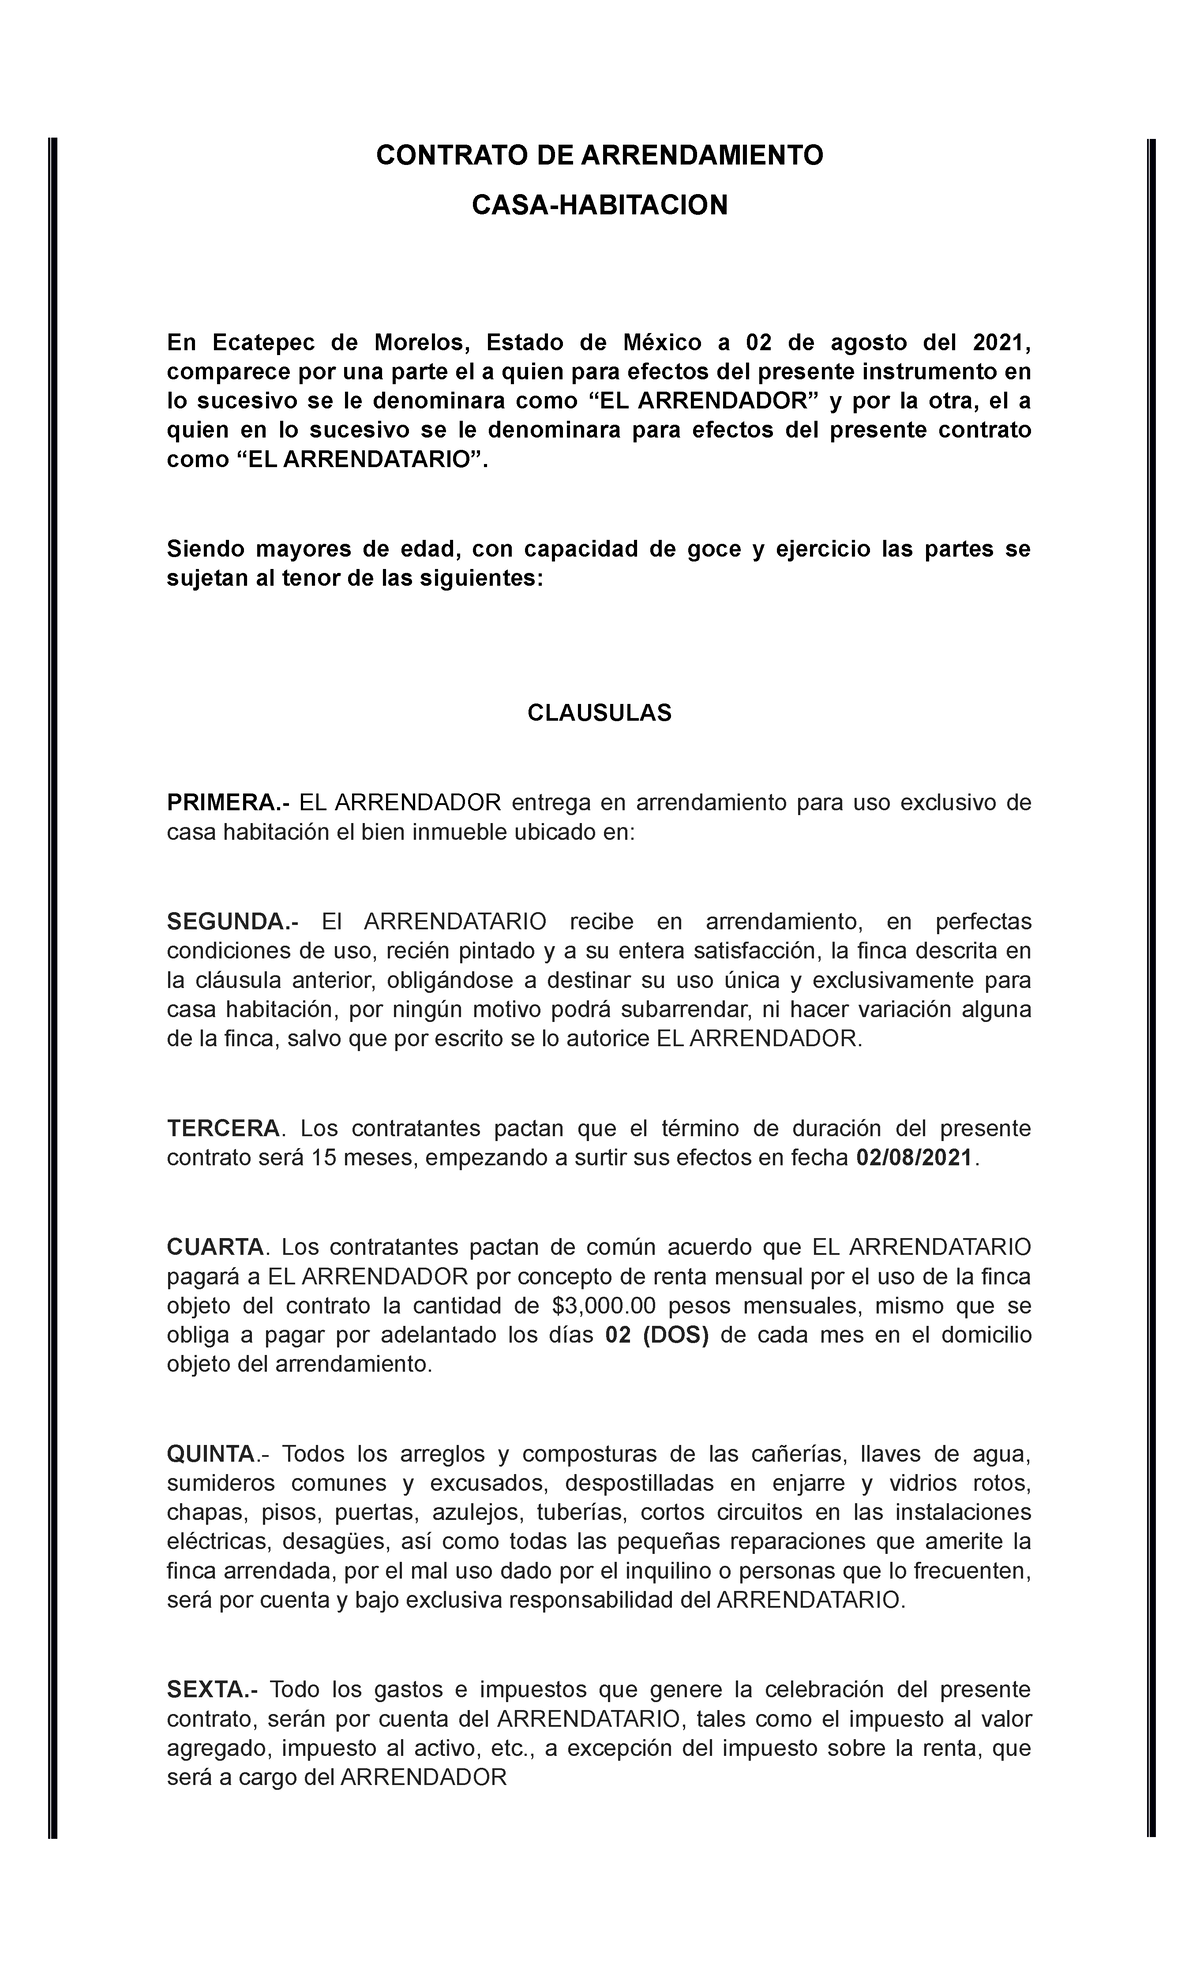 Contrato de Arrendamiento de casa habitación en mexico - CONTRATO DE  ARRENDAMIENTO CASA-HABITACION - Studocu